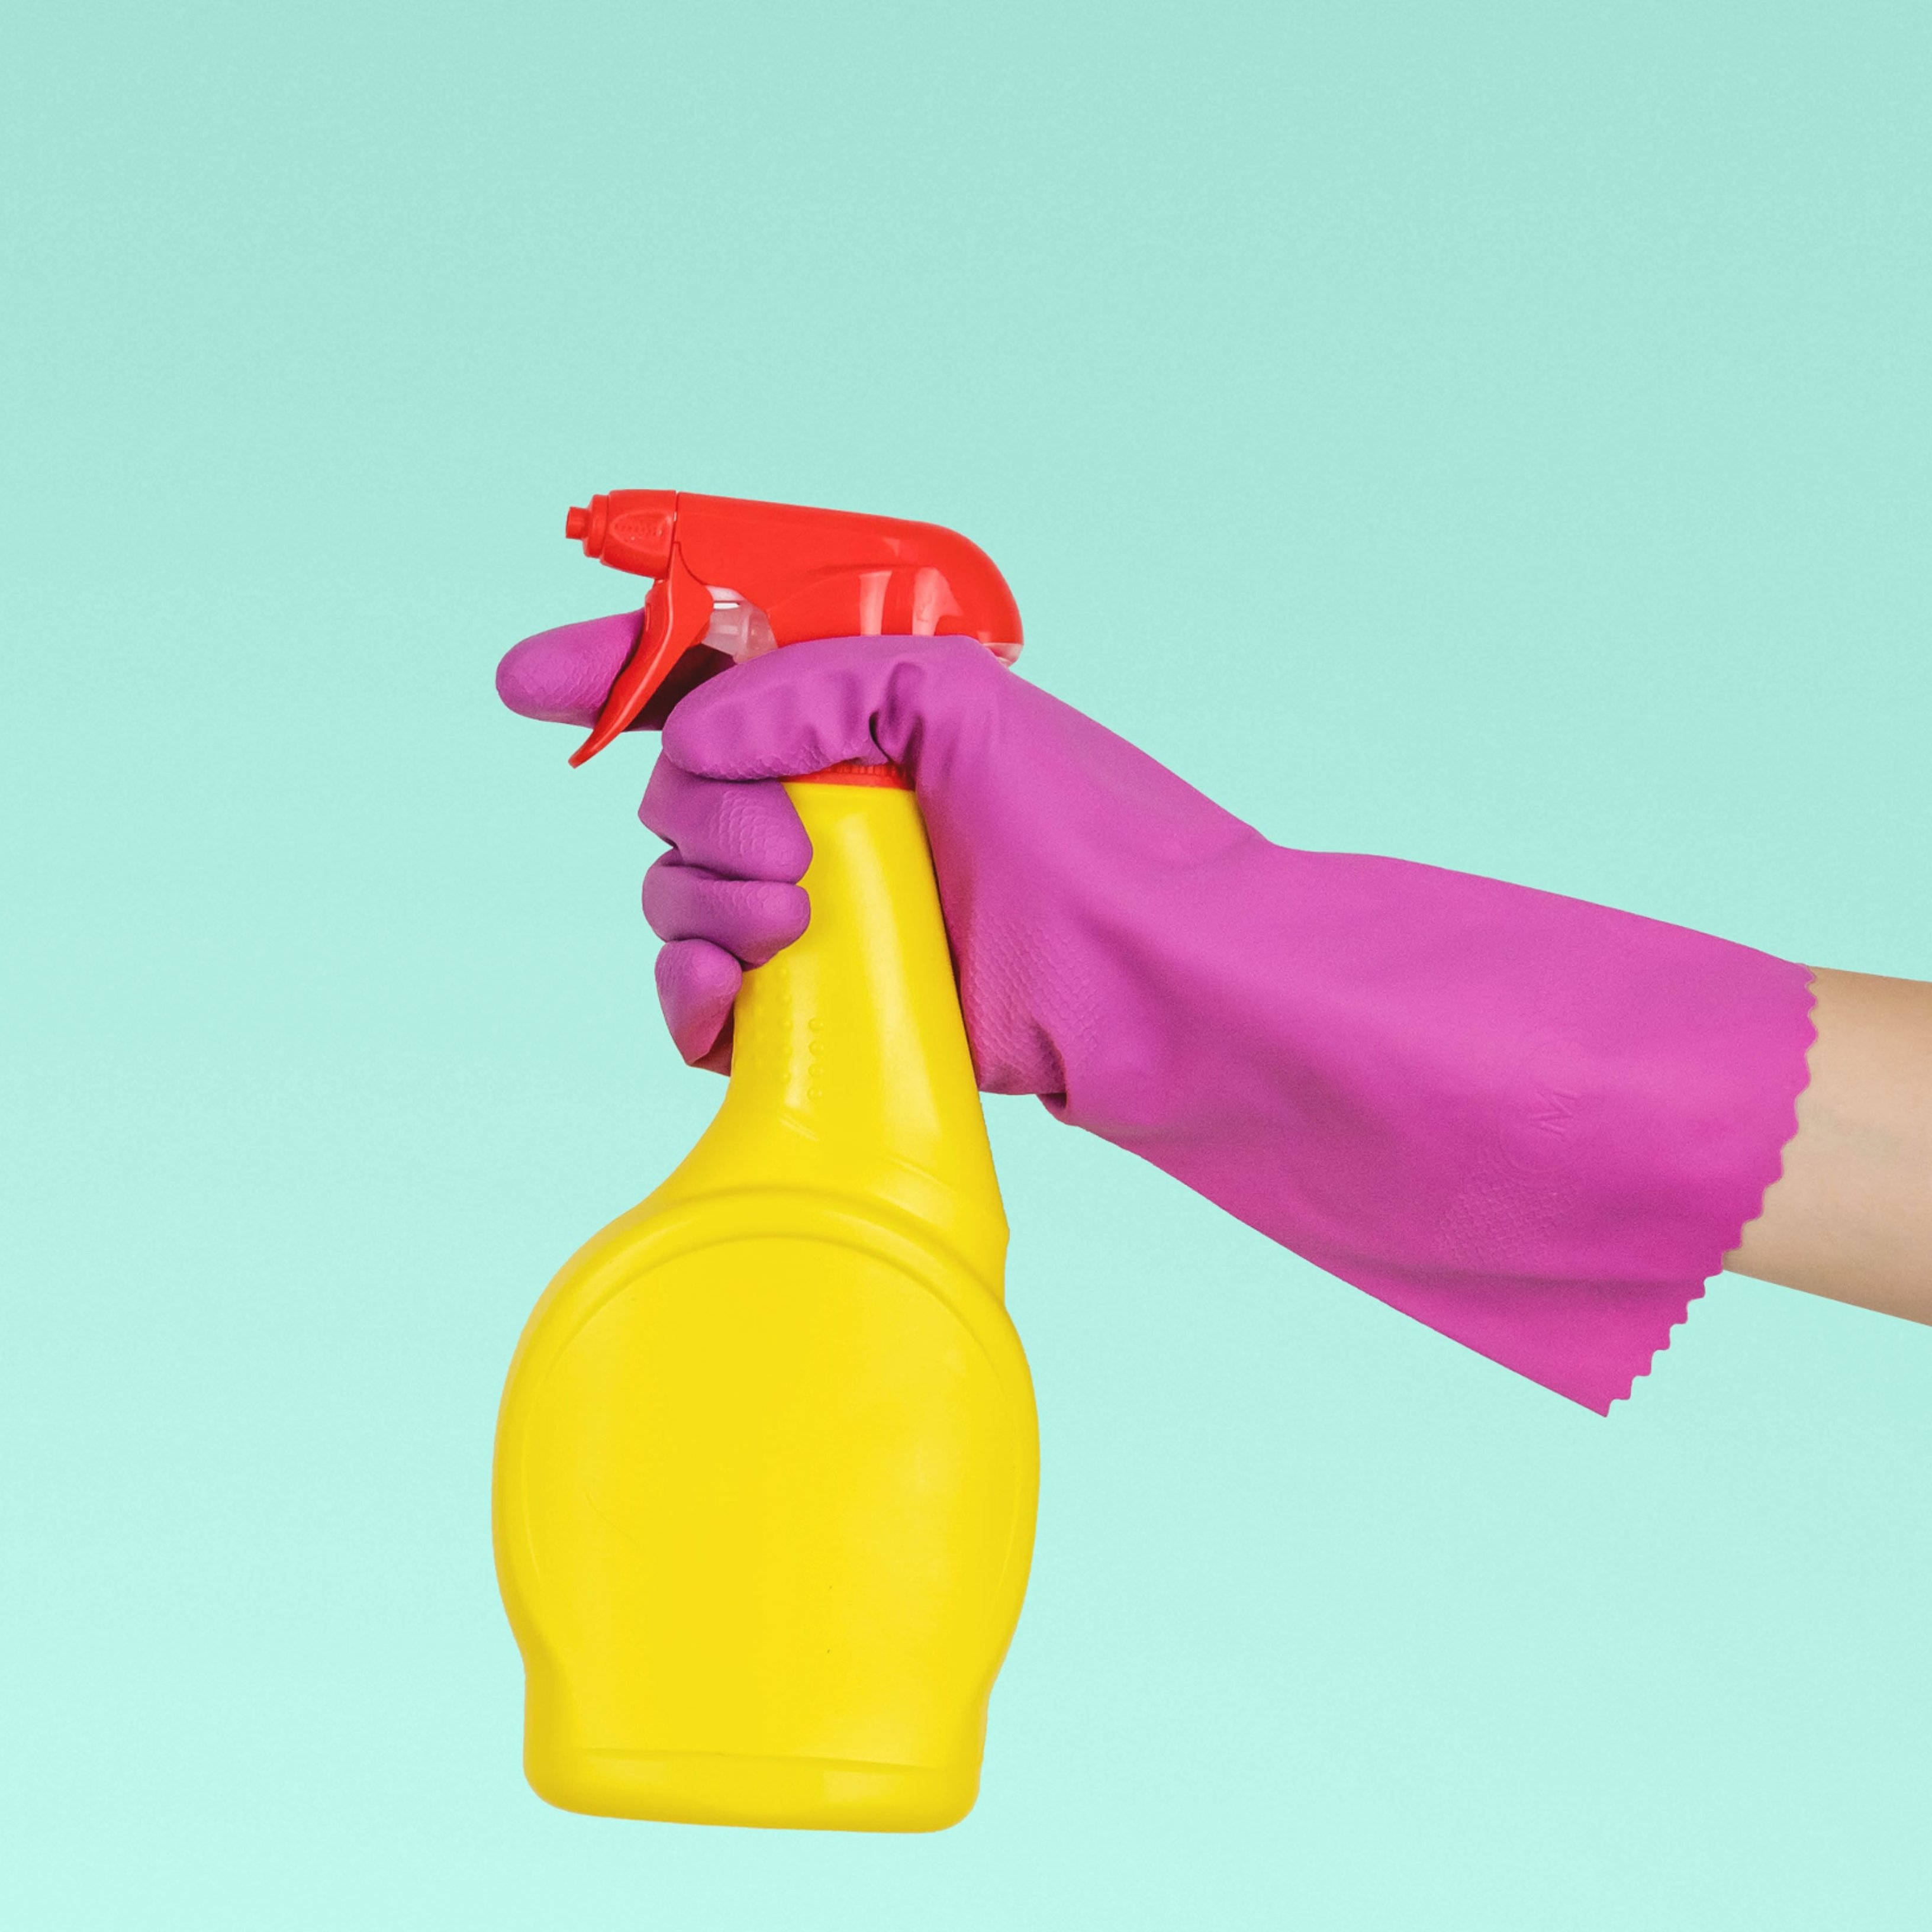 Esta combinación de productos para la limpieza puede provocar graves problemas de salud